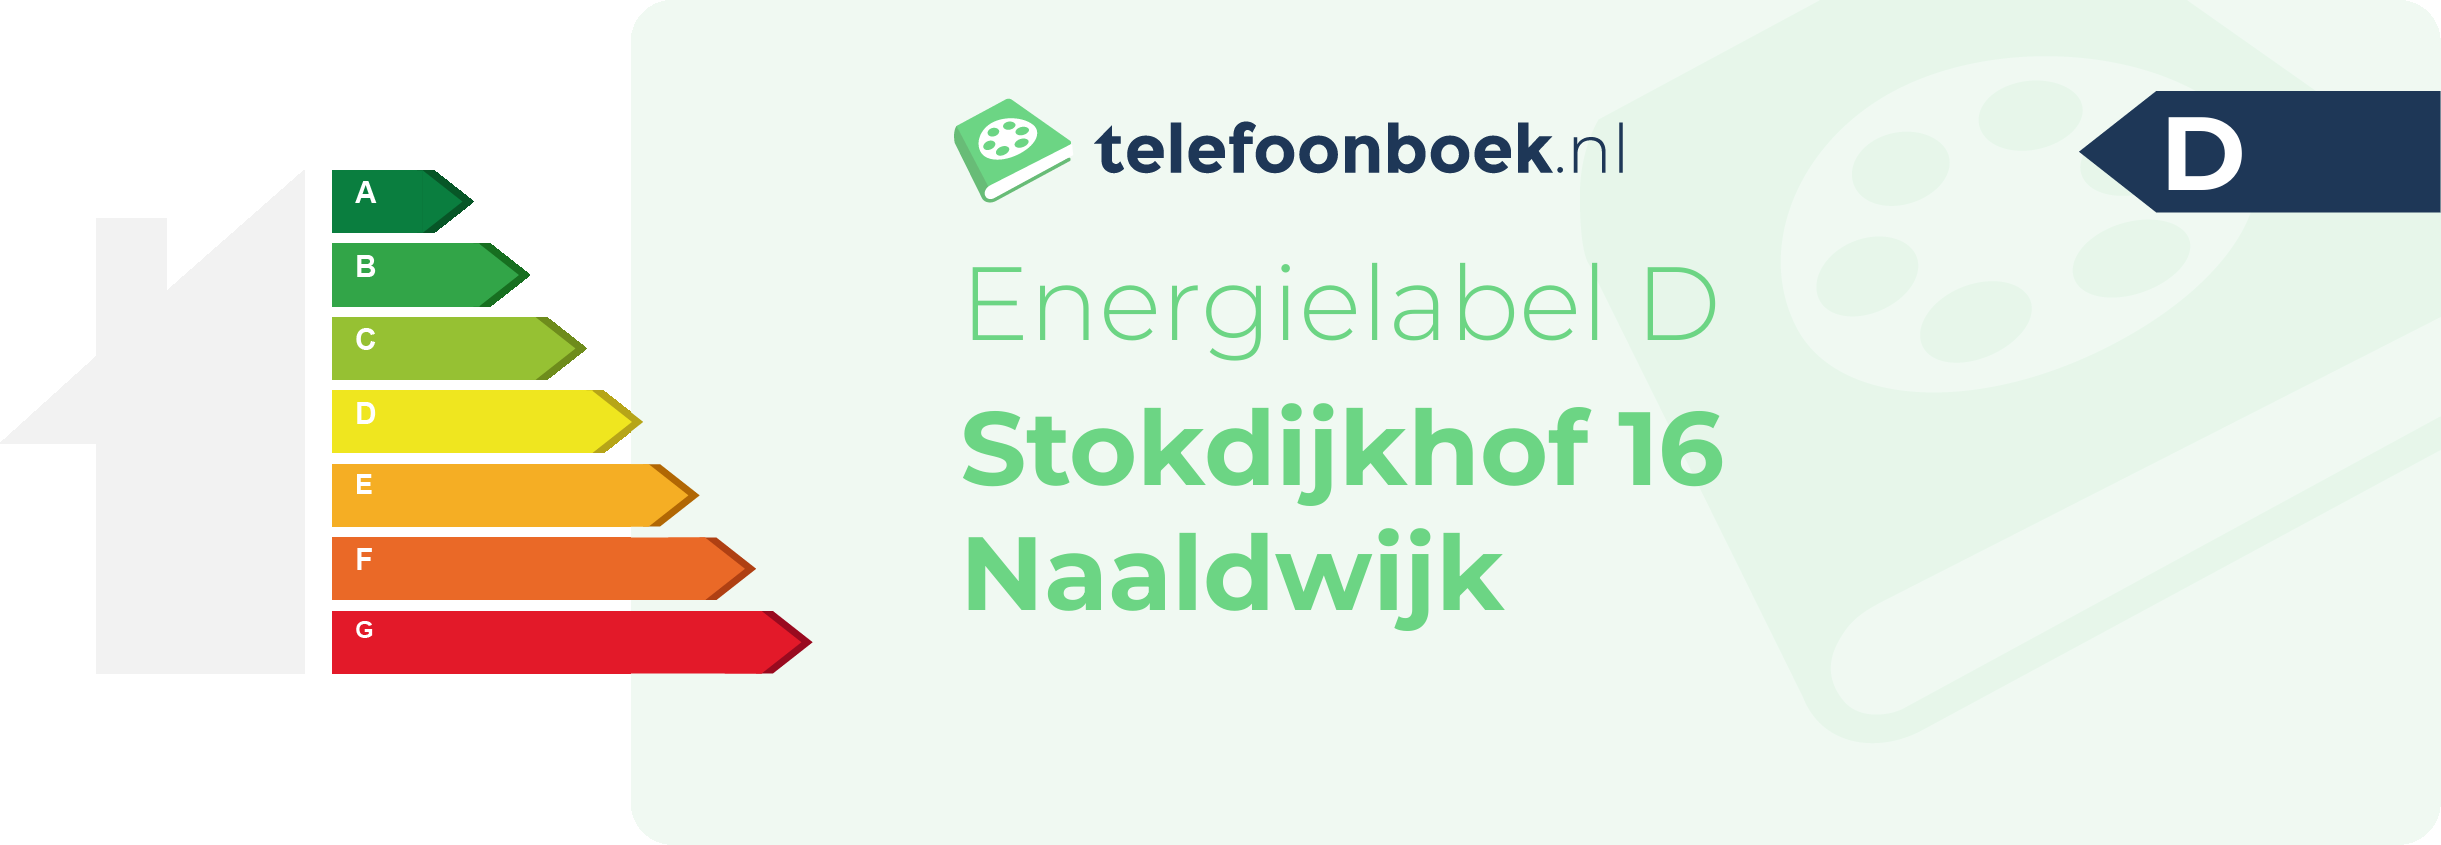 Energielabel Stokdijkhof 16 Naaldwijk